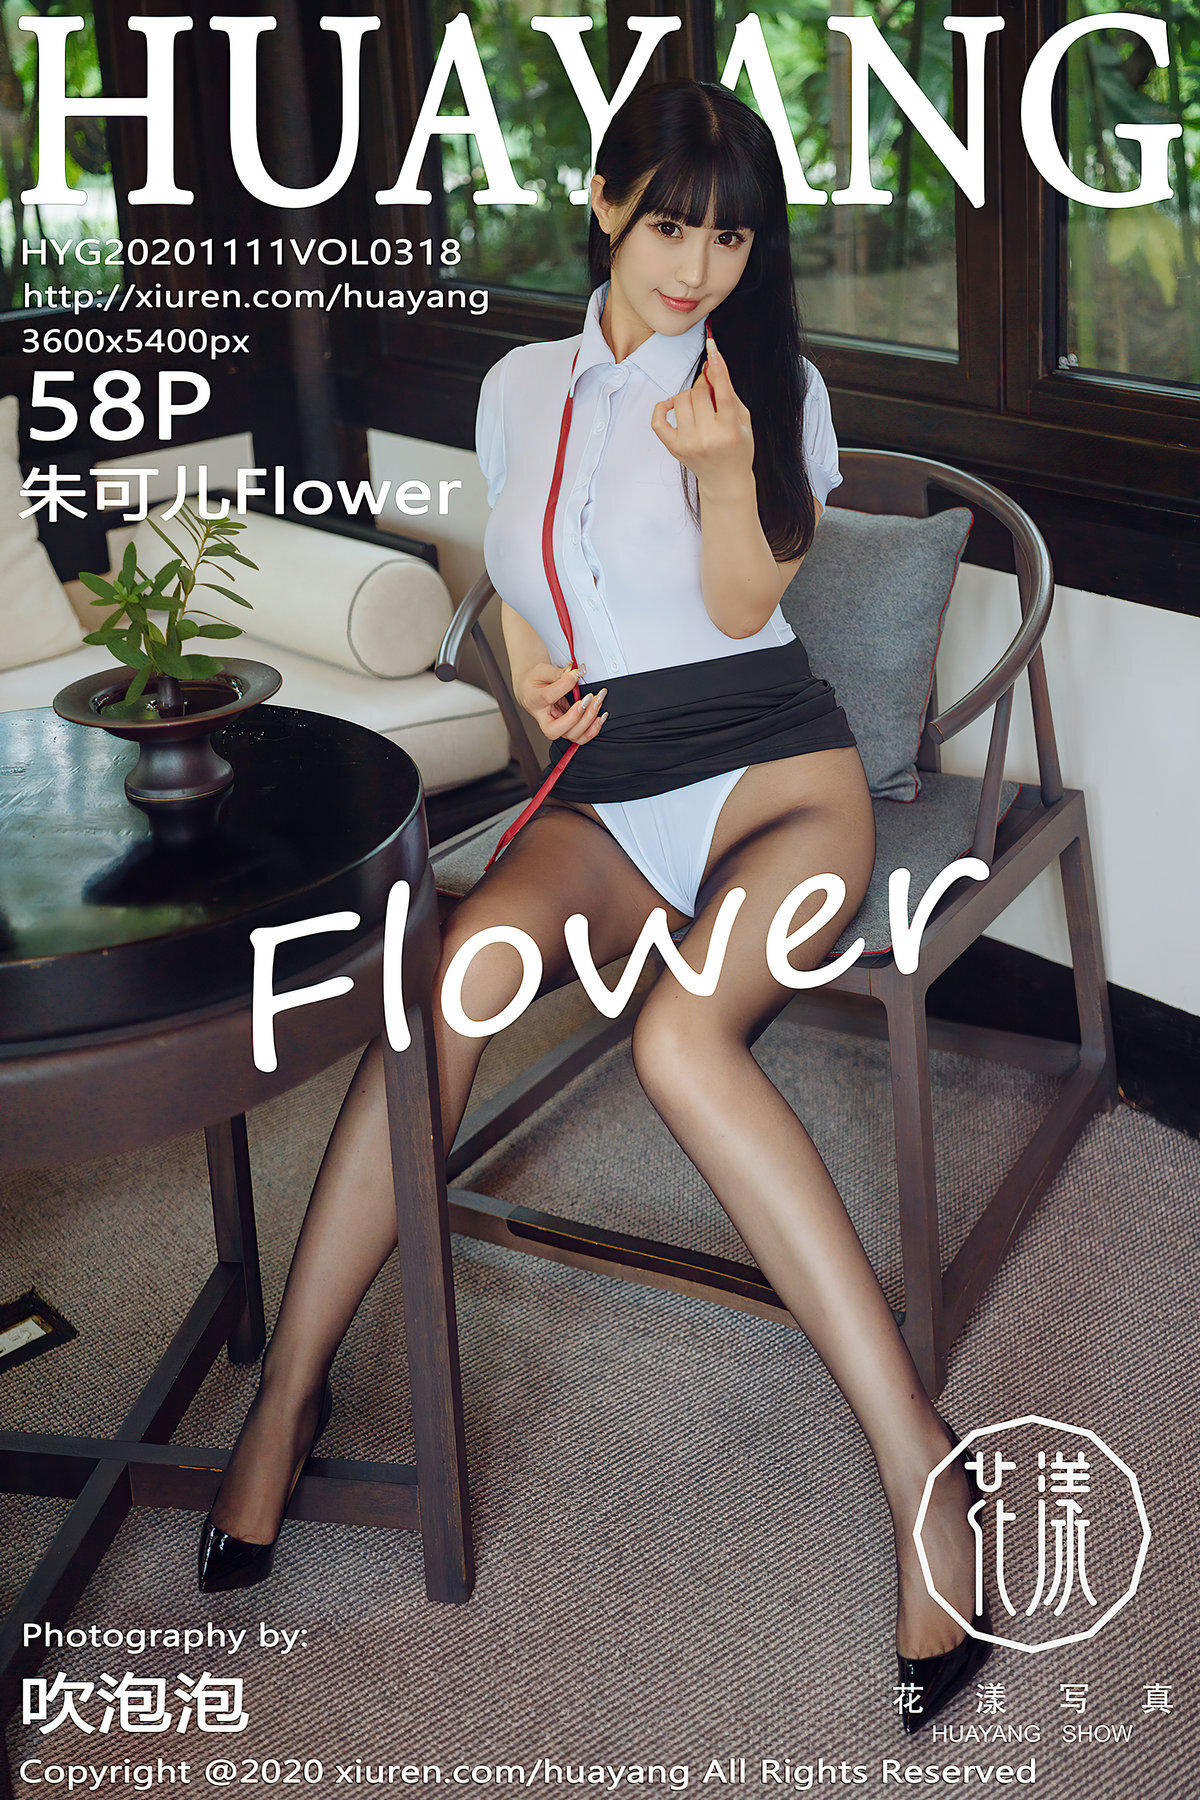 Huayang flower 2020.11.11 vol.318 zhuke'er flower